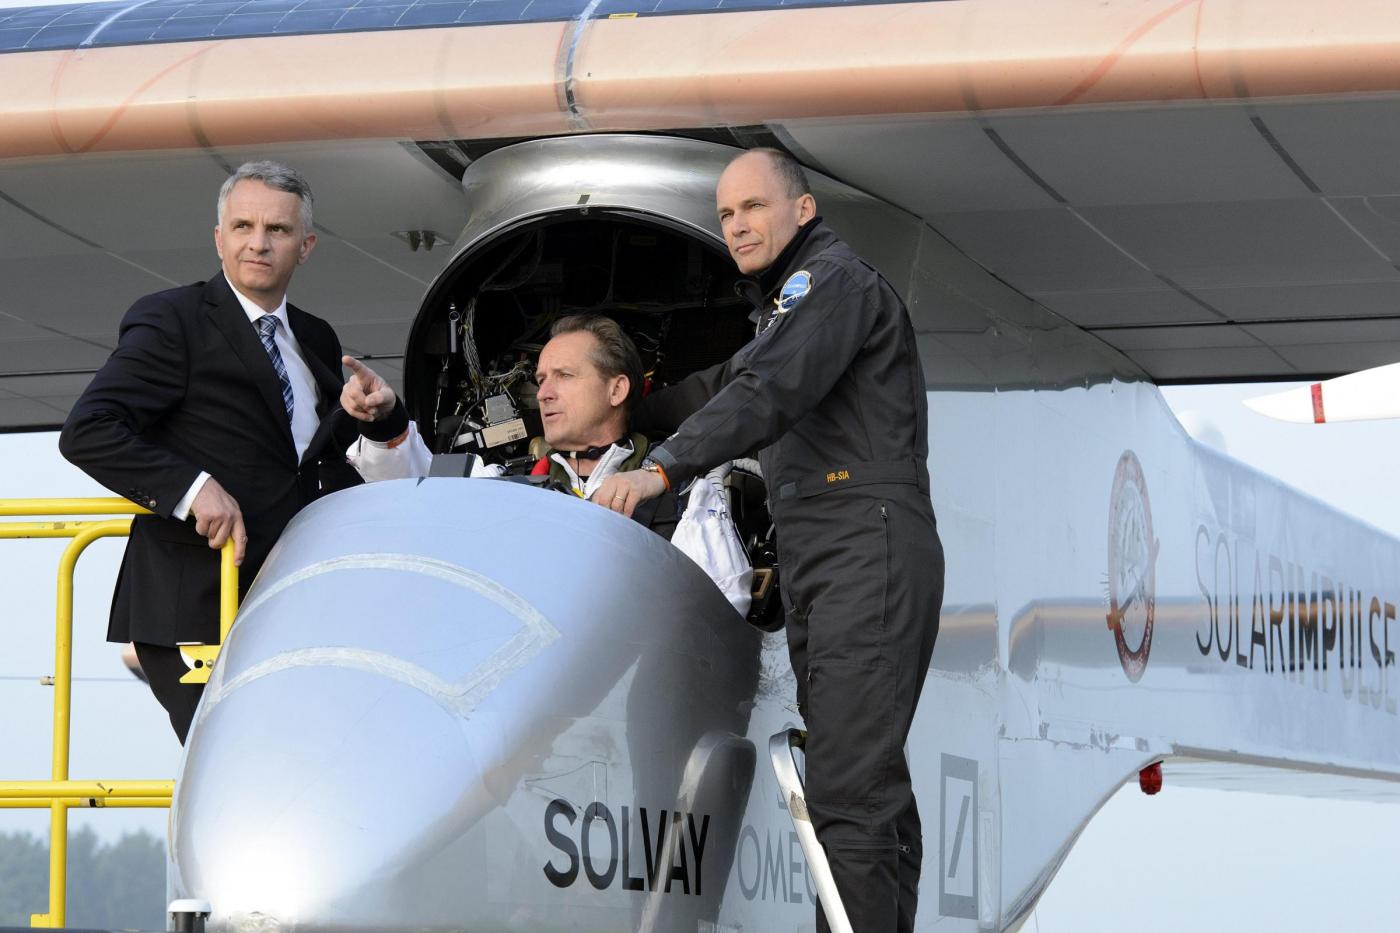 Decolla Solar Impulse, il primo aereo solare al mondo07